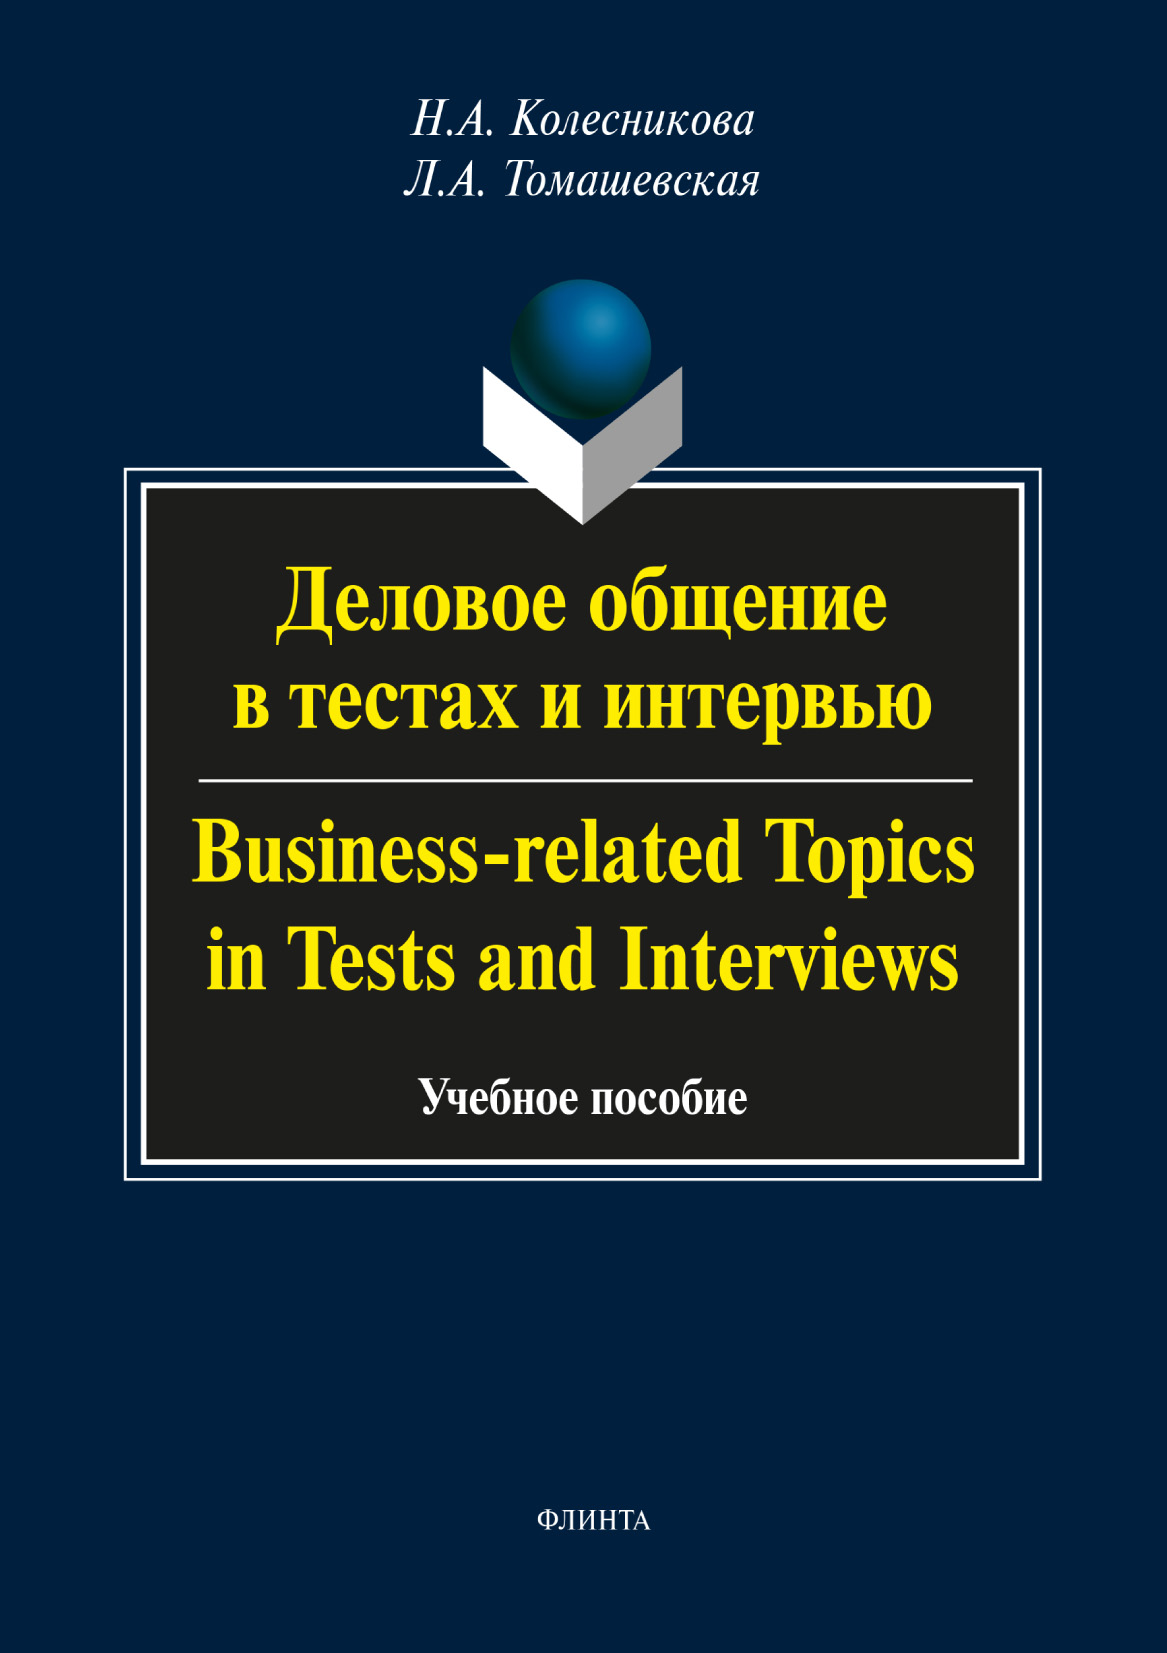 Деловое общение в тестах и интервью / Business-related Topics in Tests and Interviews. Учебное пособие